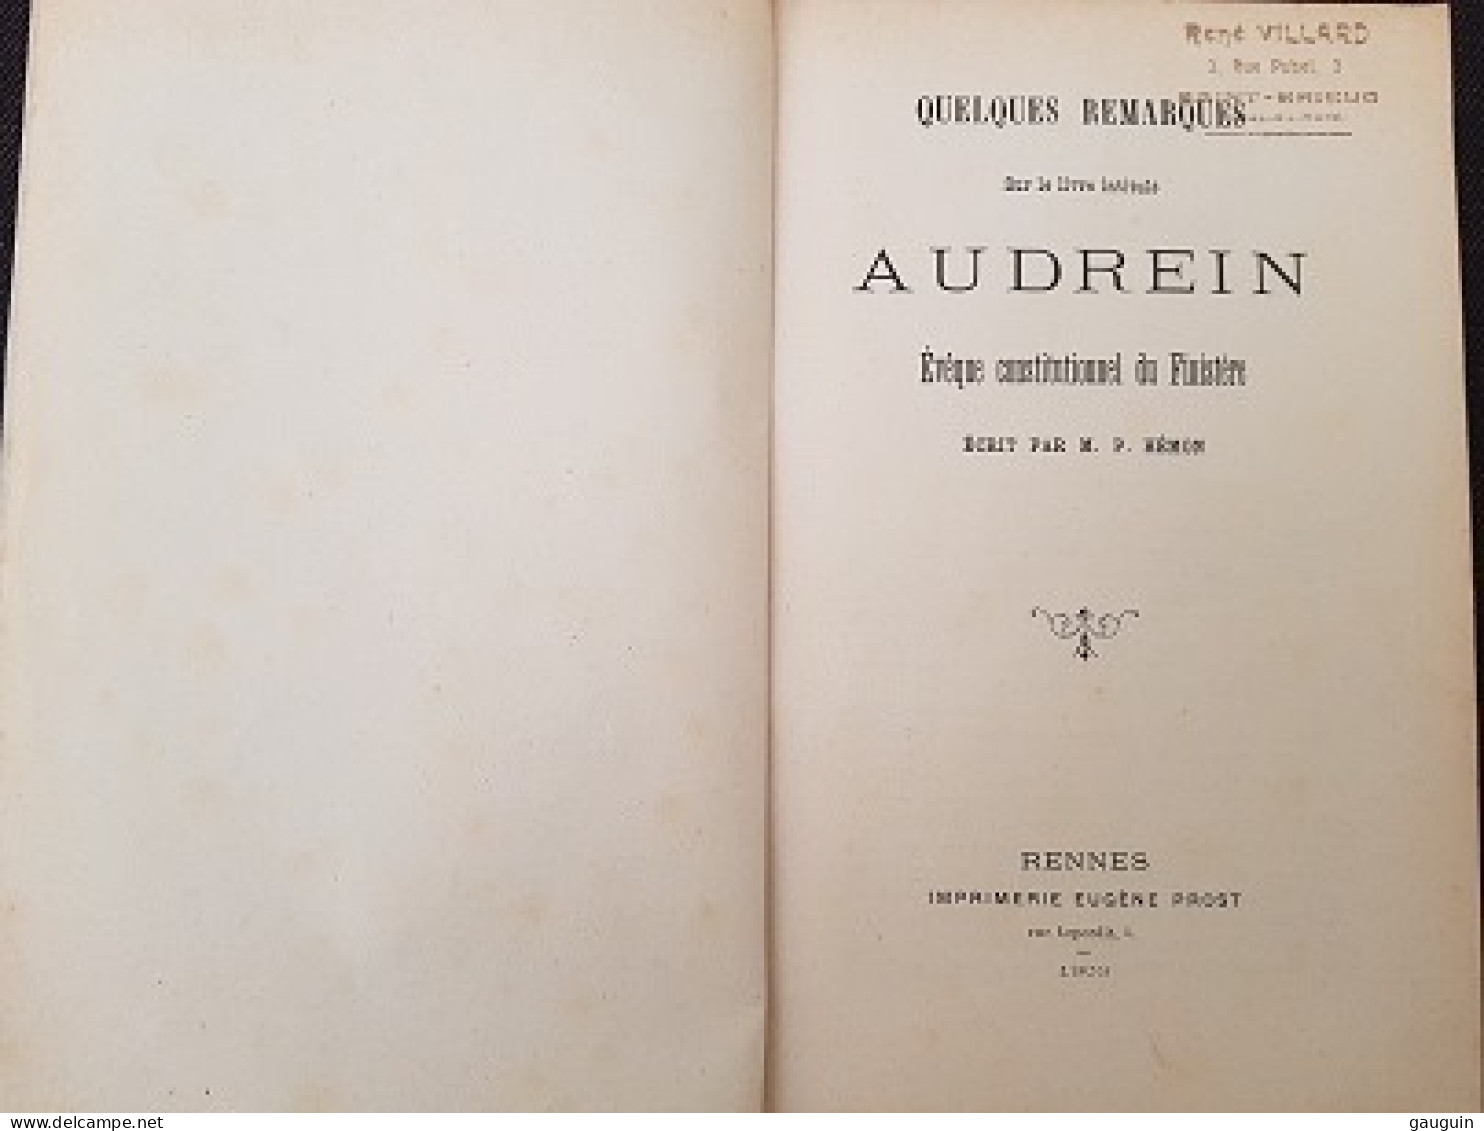 AUDREIN - ÉVÊQUE CONSTITUTIONNEL Du FINISTERE - Ecrit Par M.P.HEMON - Recueil - 1903 - 30 P - Bretagne